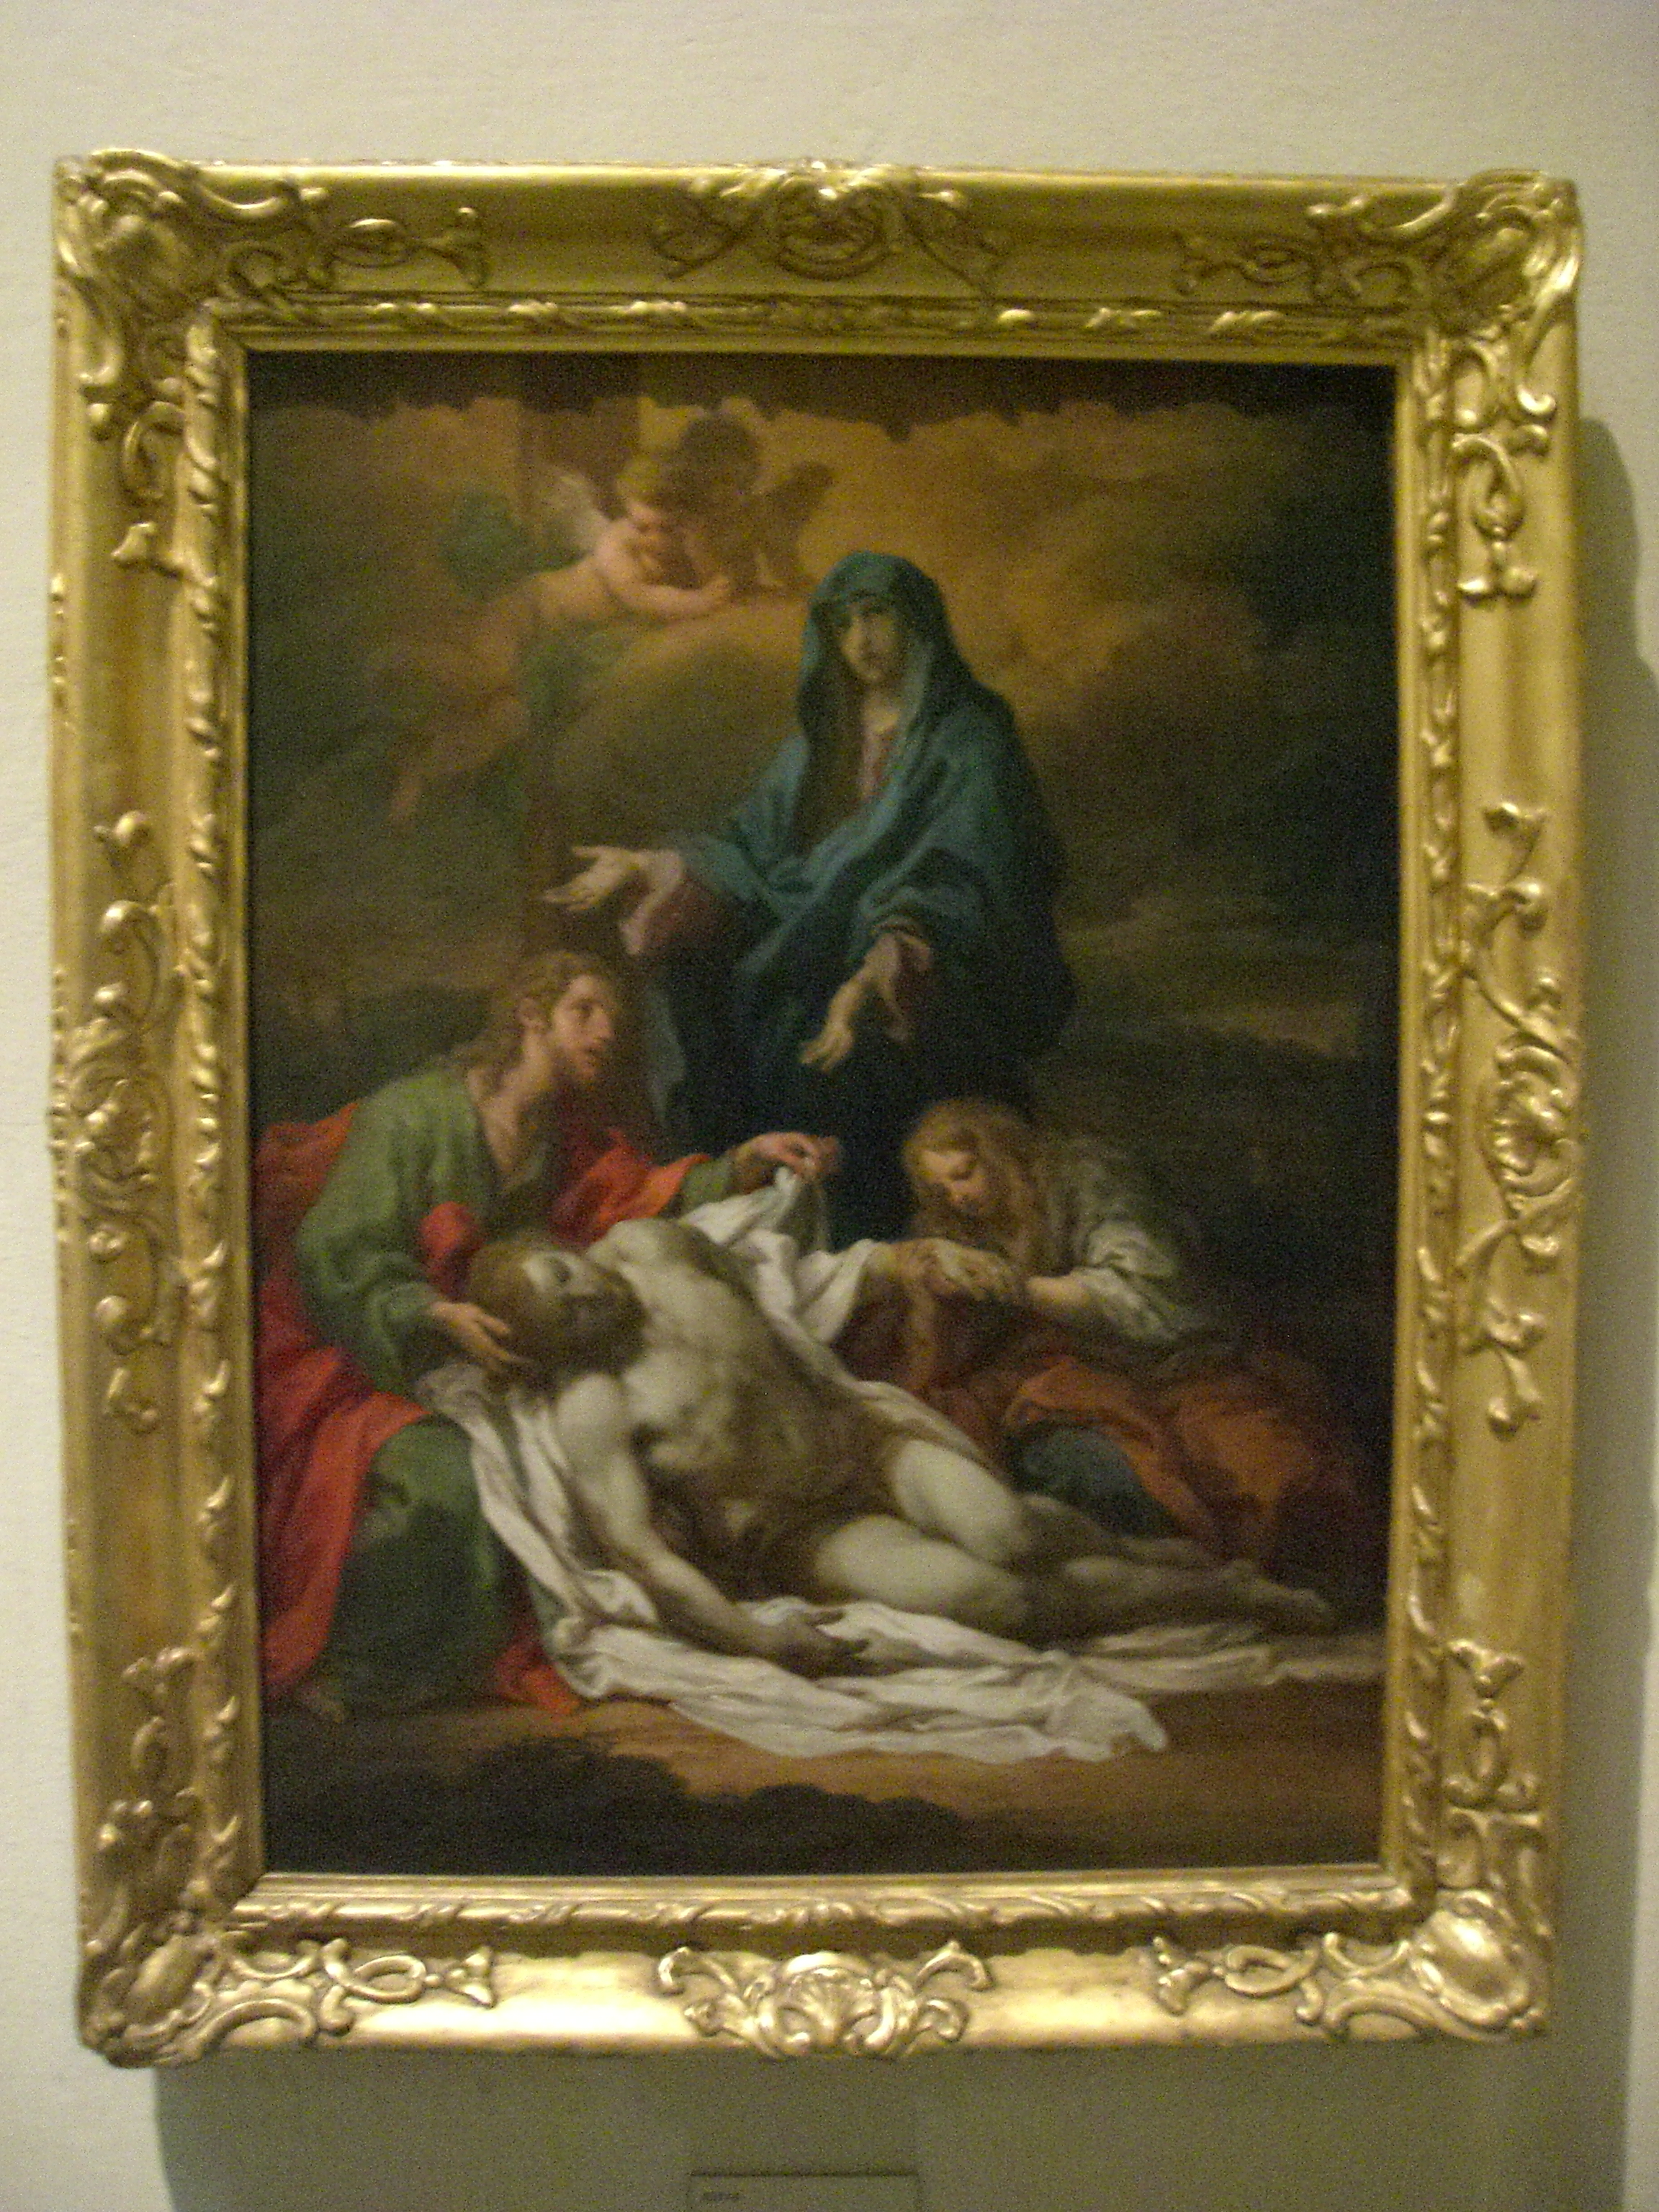 Vatican Museum Pinacoteca (Art Gallery): Jesus' Body is ...